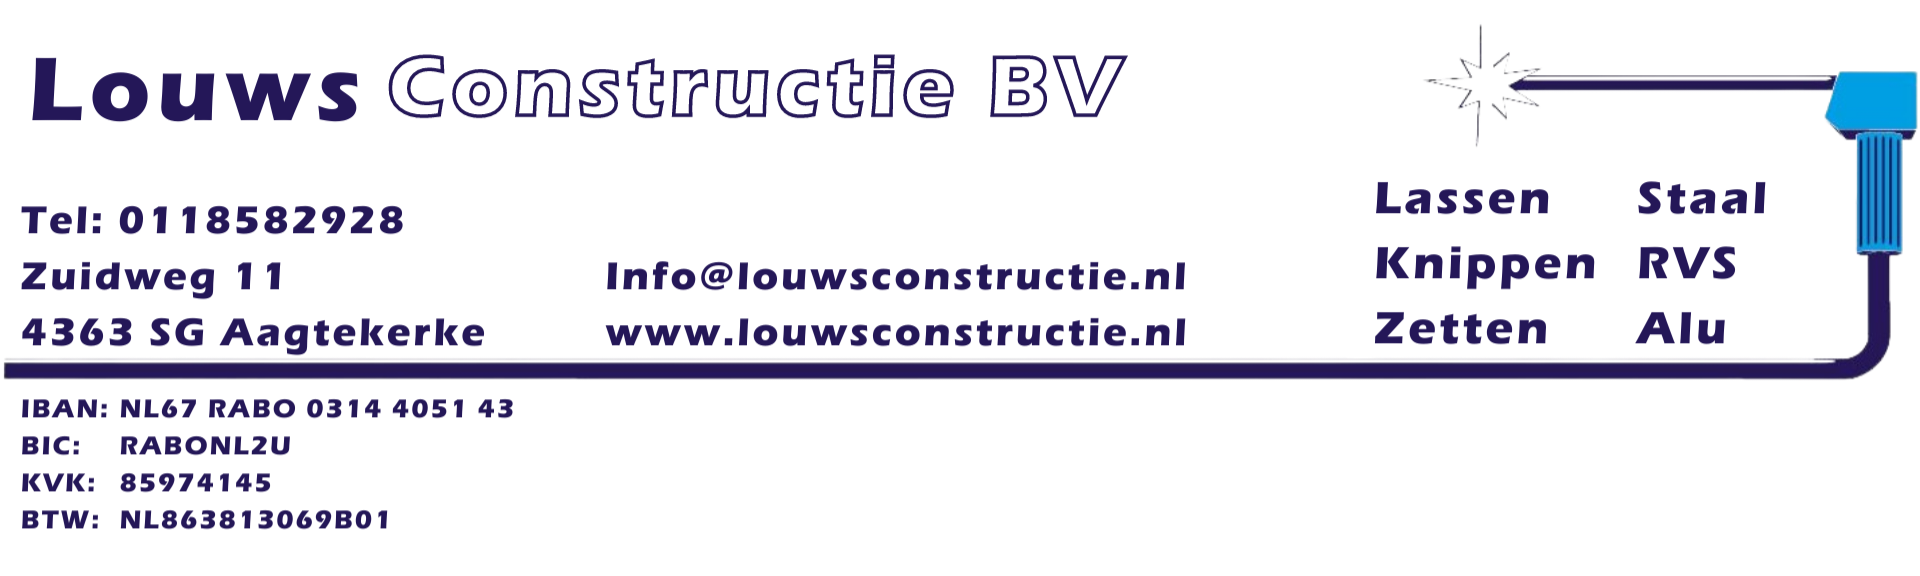 Louws Constructie BV.png